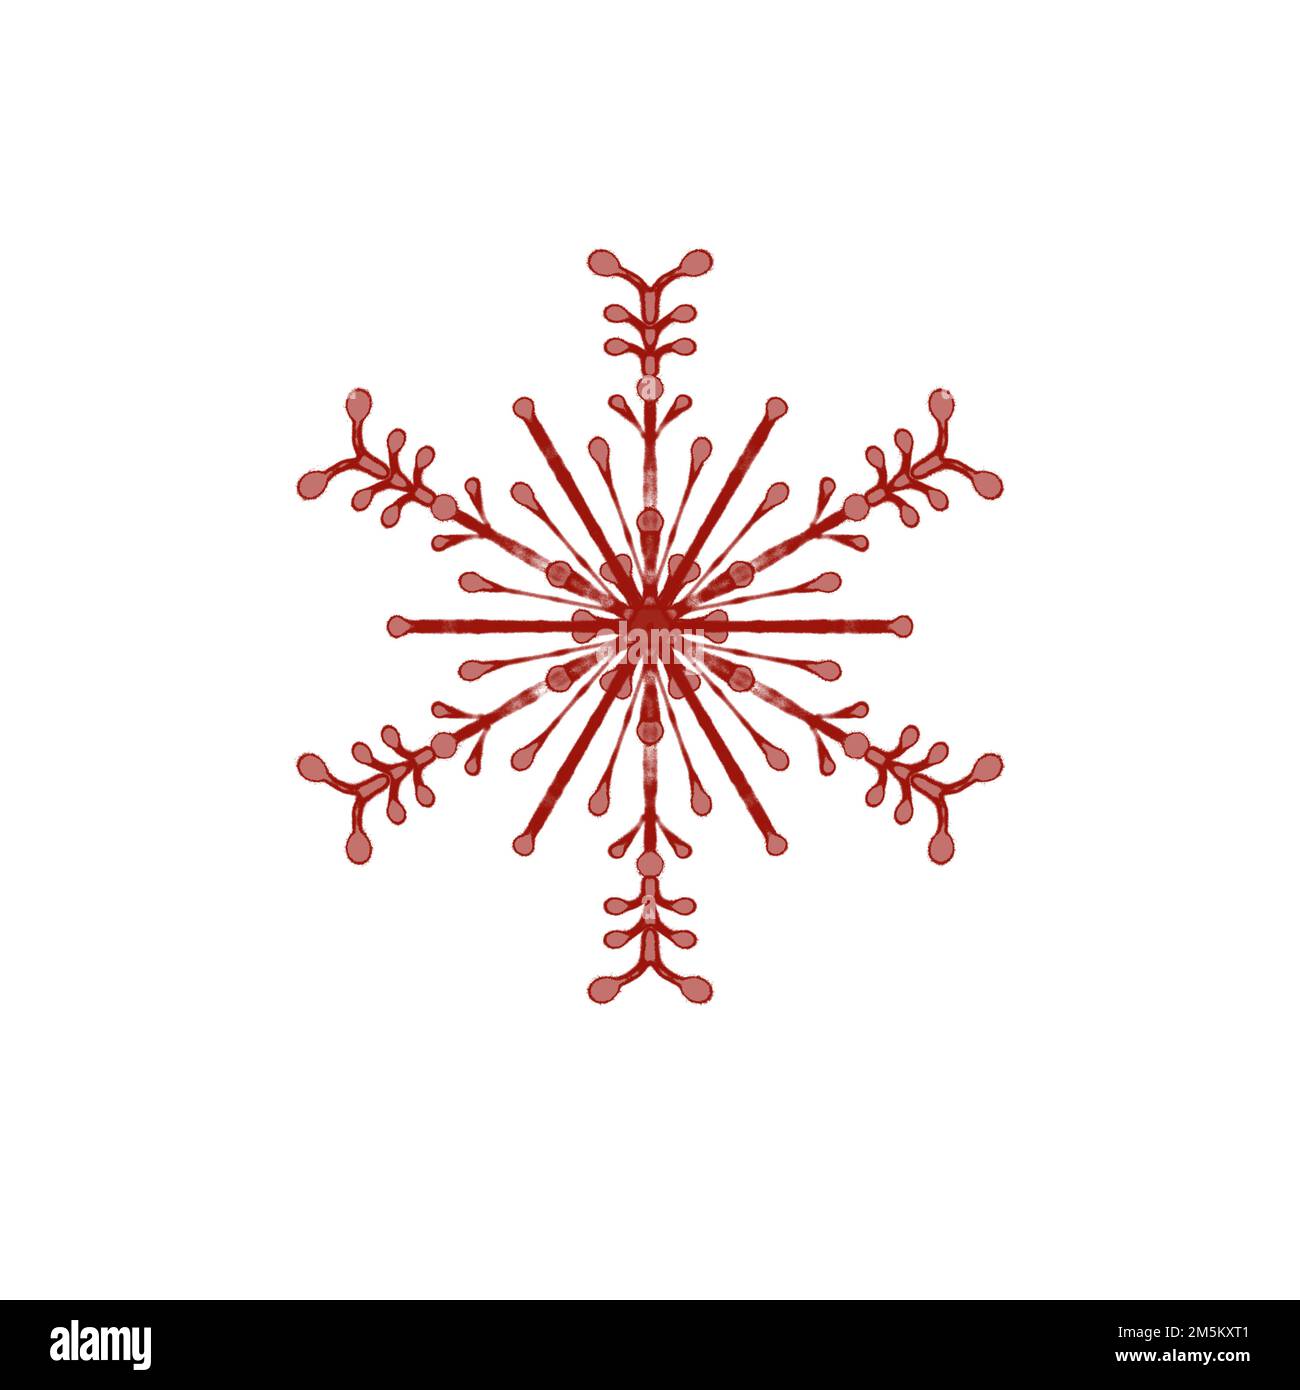 Red Christmas snowflakes on white. Stock Photo